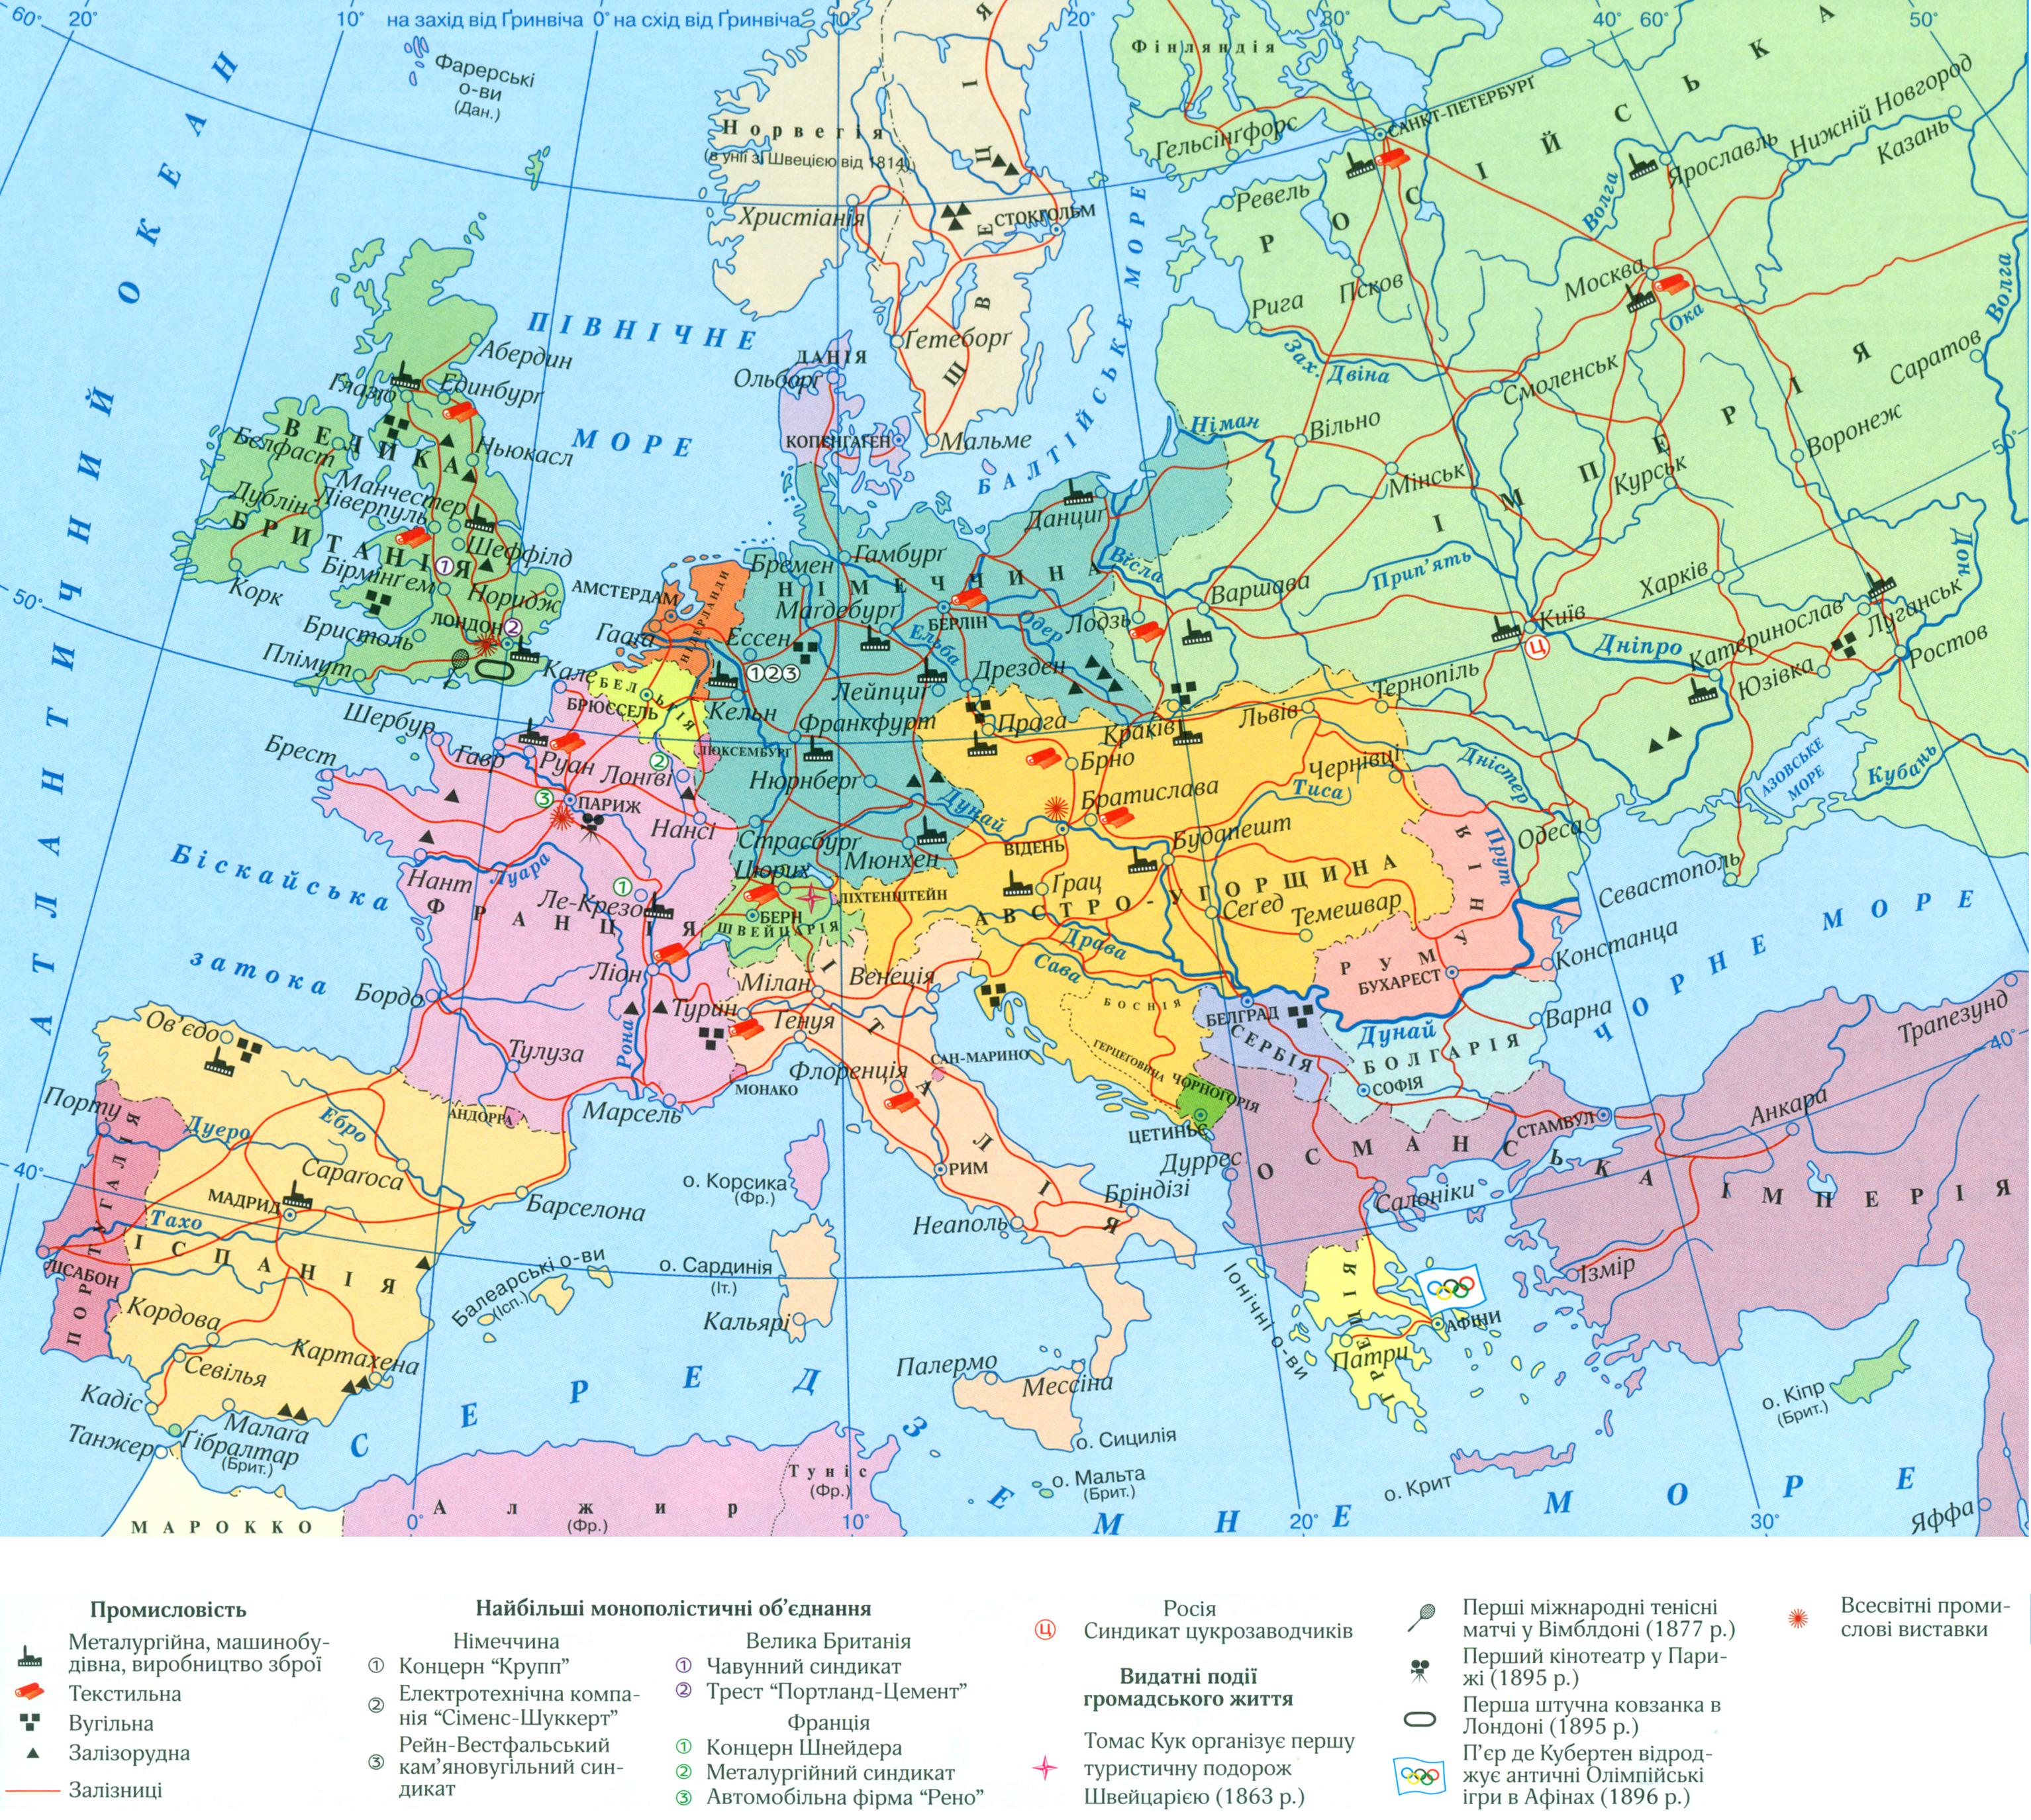 Карта промисловості Європи та близького Сходу кінця XIX століття